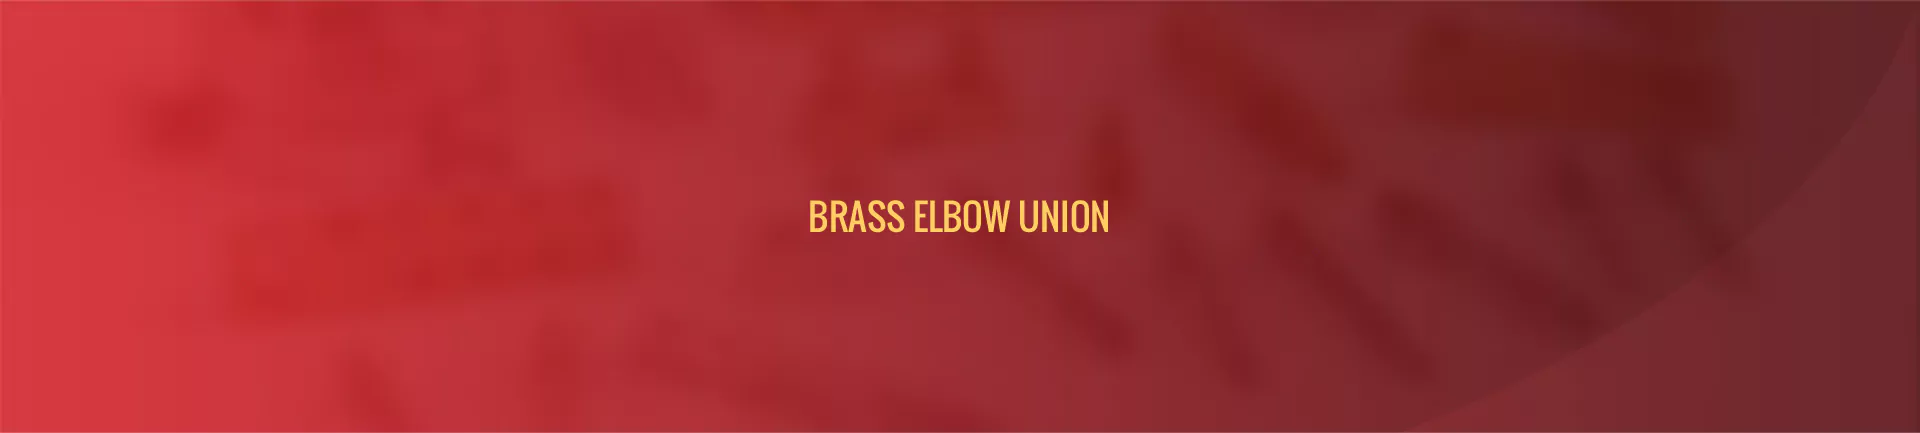 brass_elbow_union-banner